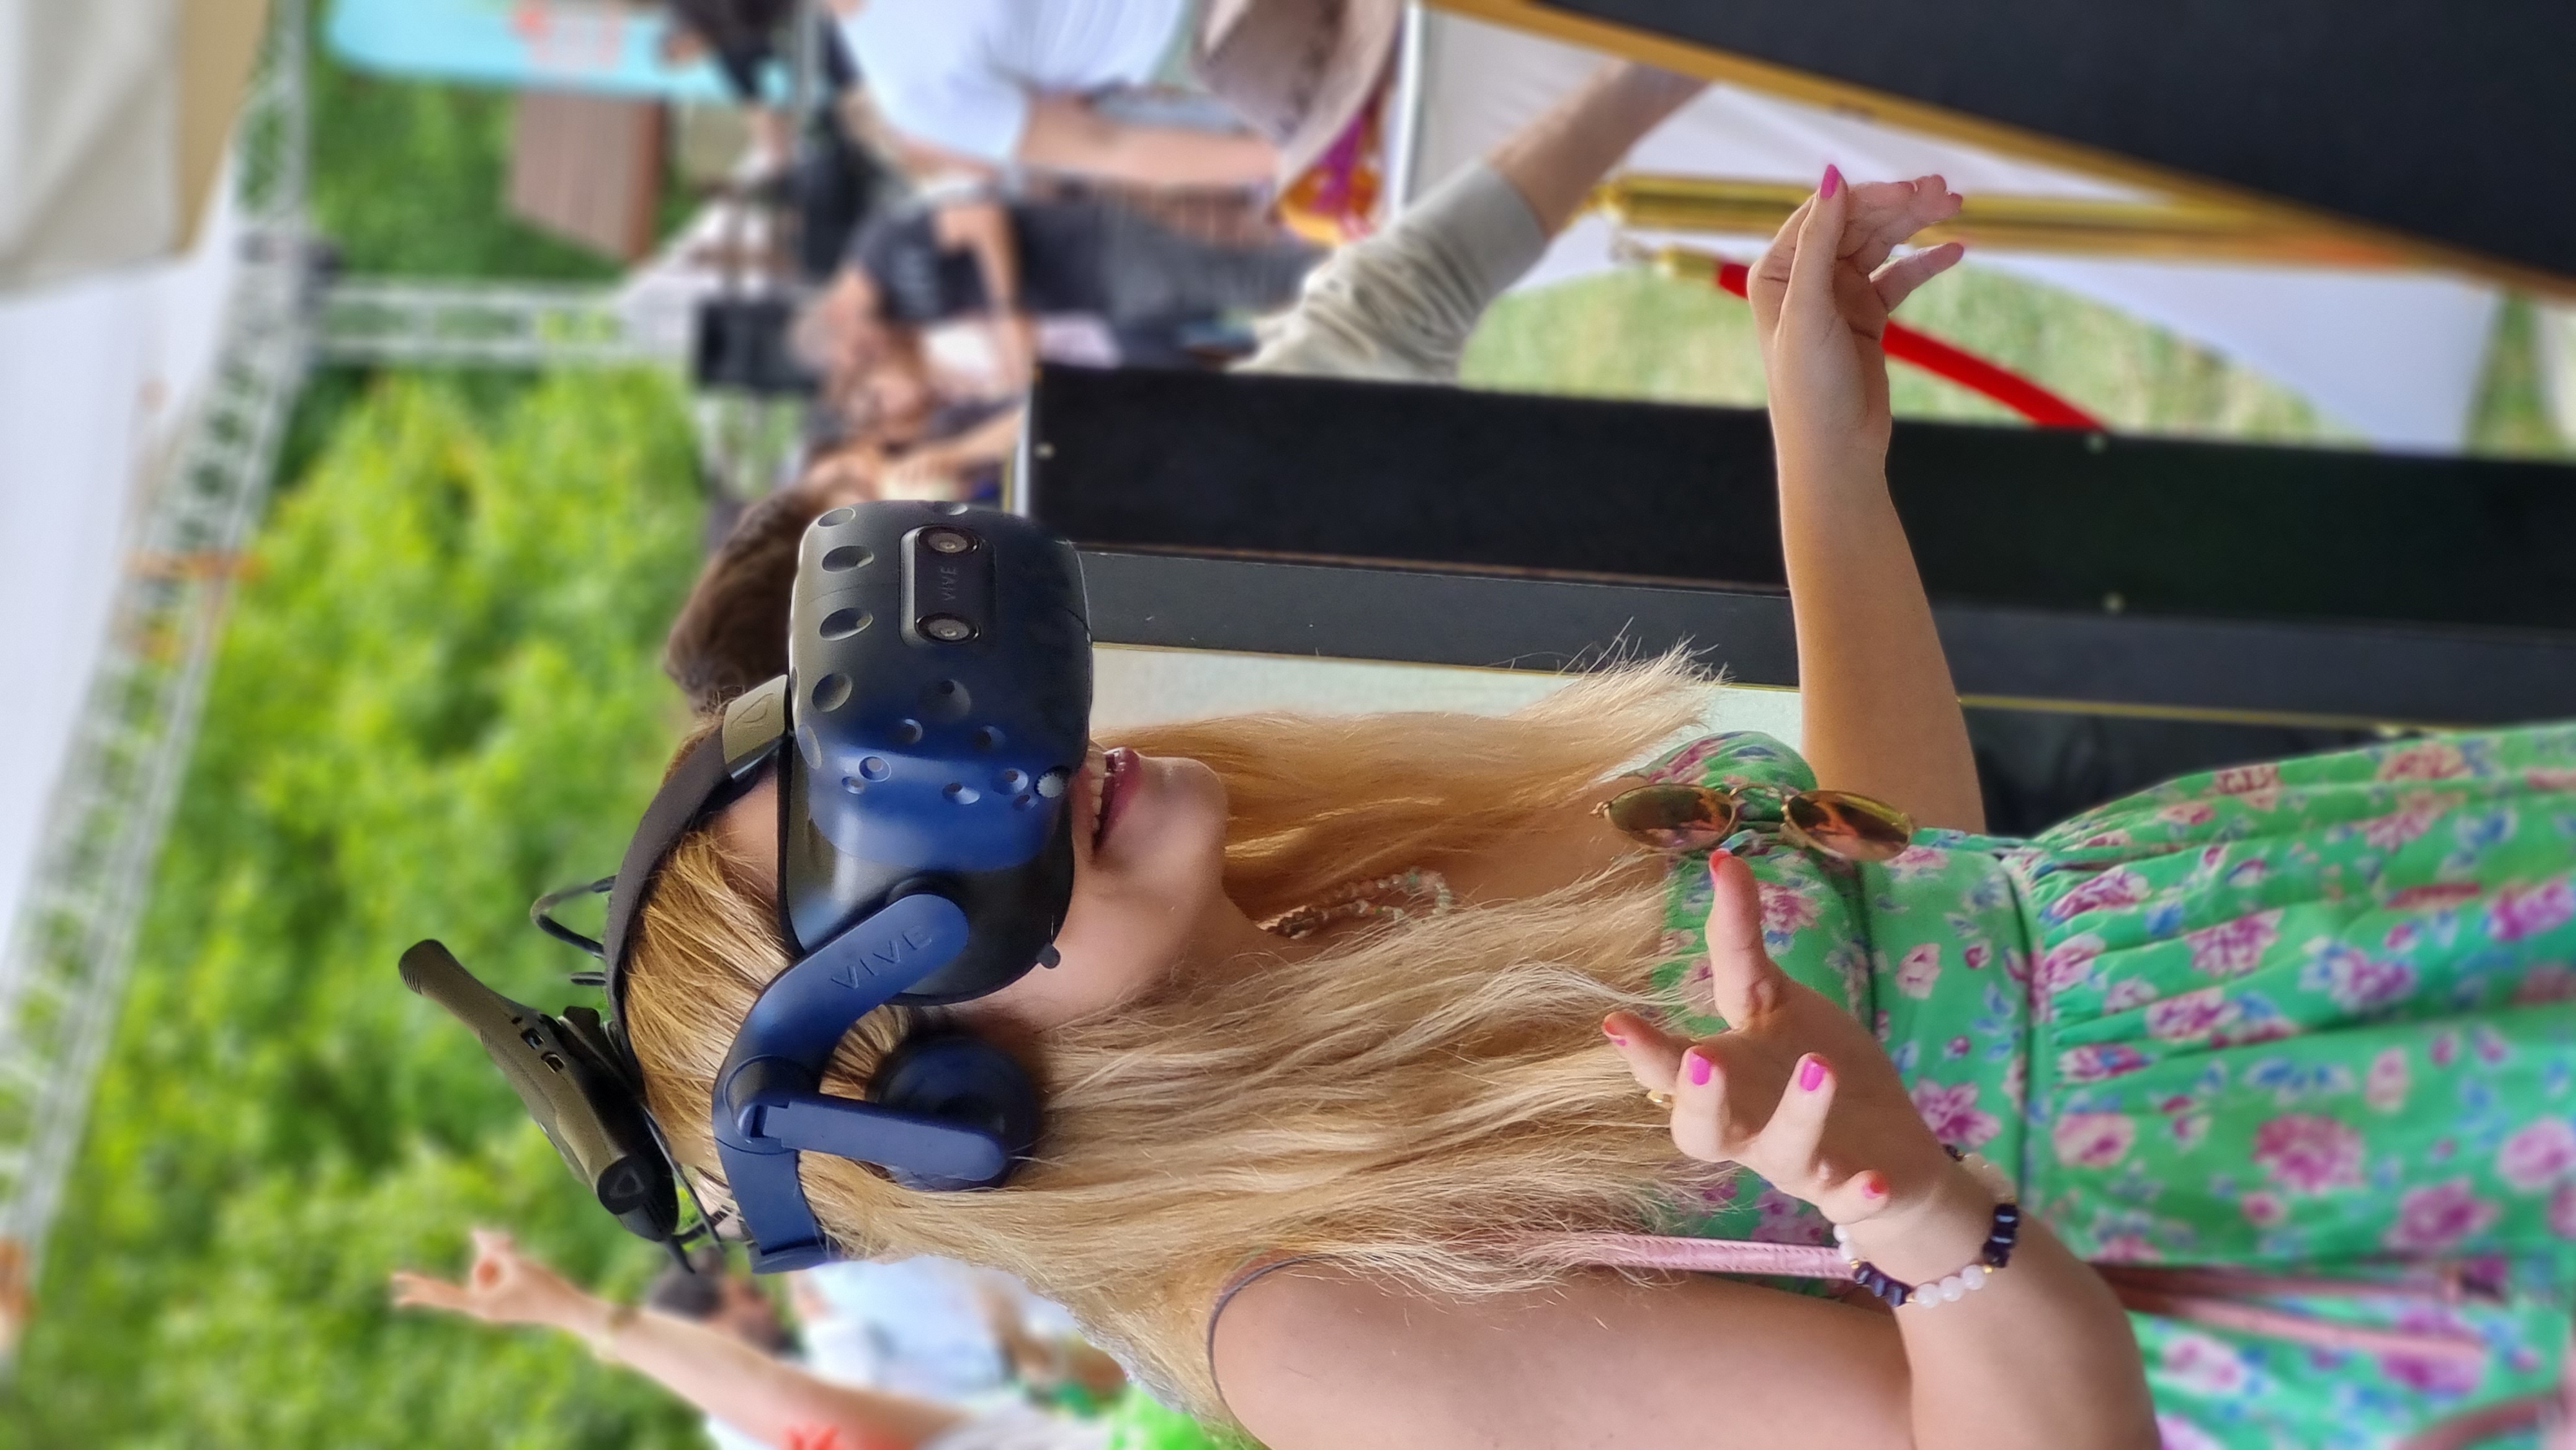 VR HOUSE, Beykoz Kelebek Çiftliği'nde Gerçekleştirilen Kurumsal Etkinlikte Emlakjet Çalışanlarını Sanal Gerçeklik Dünyasına Sürükledi